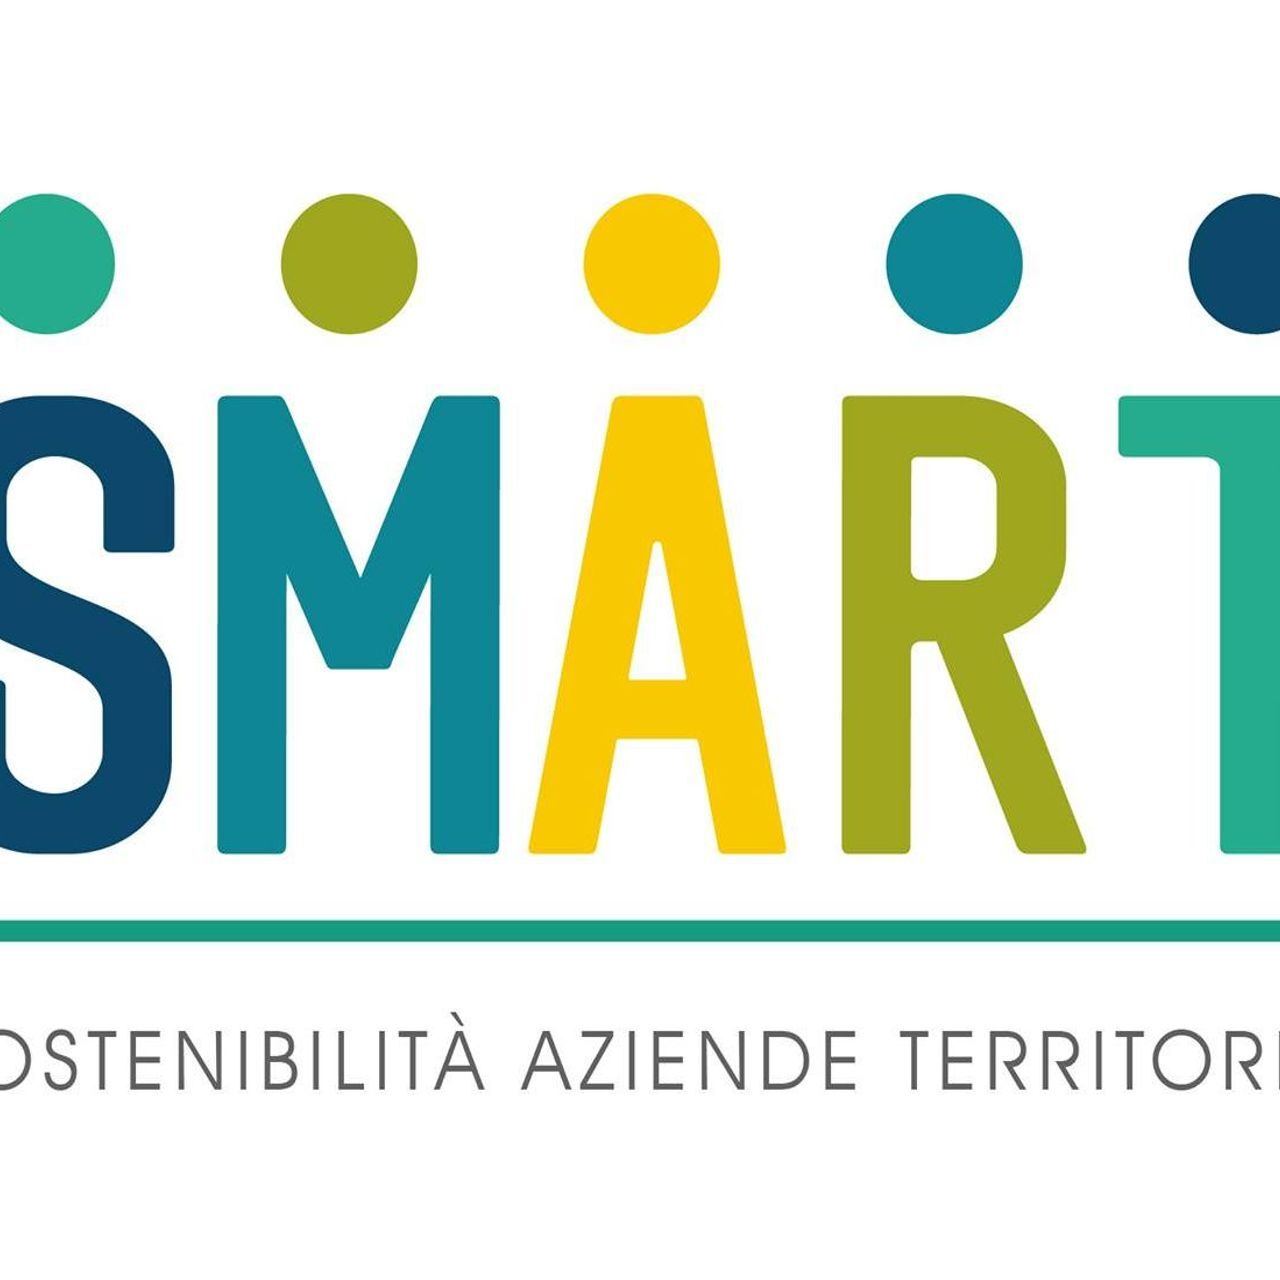 El logo del proyecto SMART (Estrategias Sostenibles y Modelos de Negocio Responsable en el Territorio Transfronterizo)